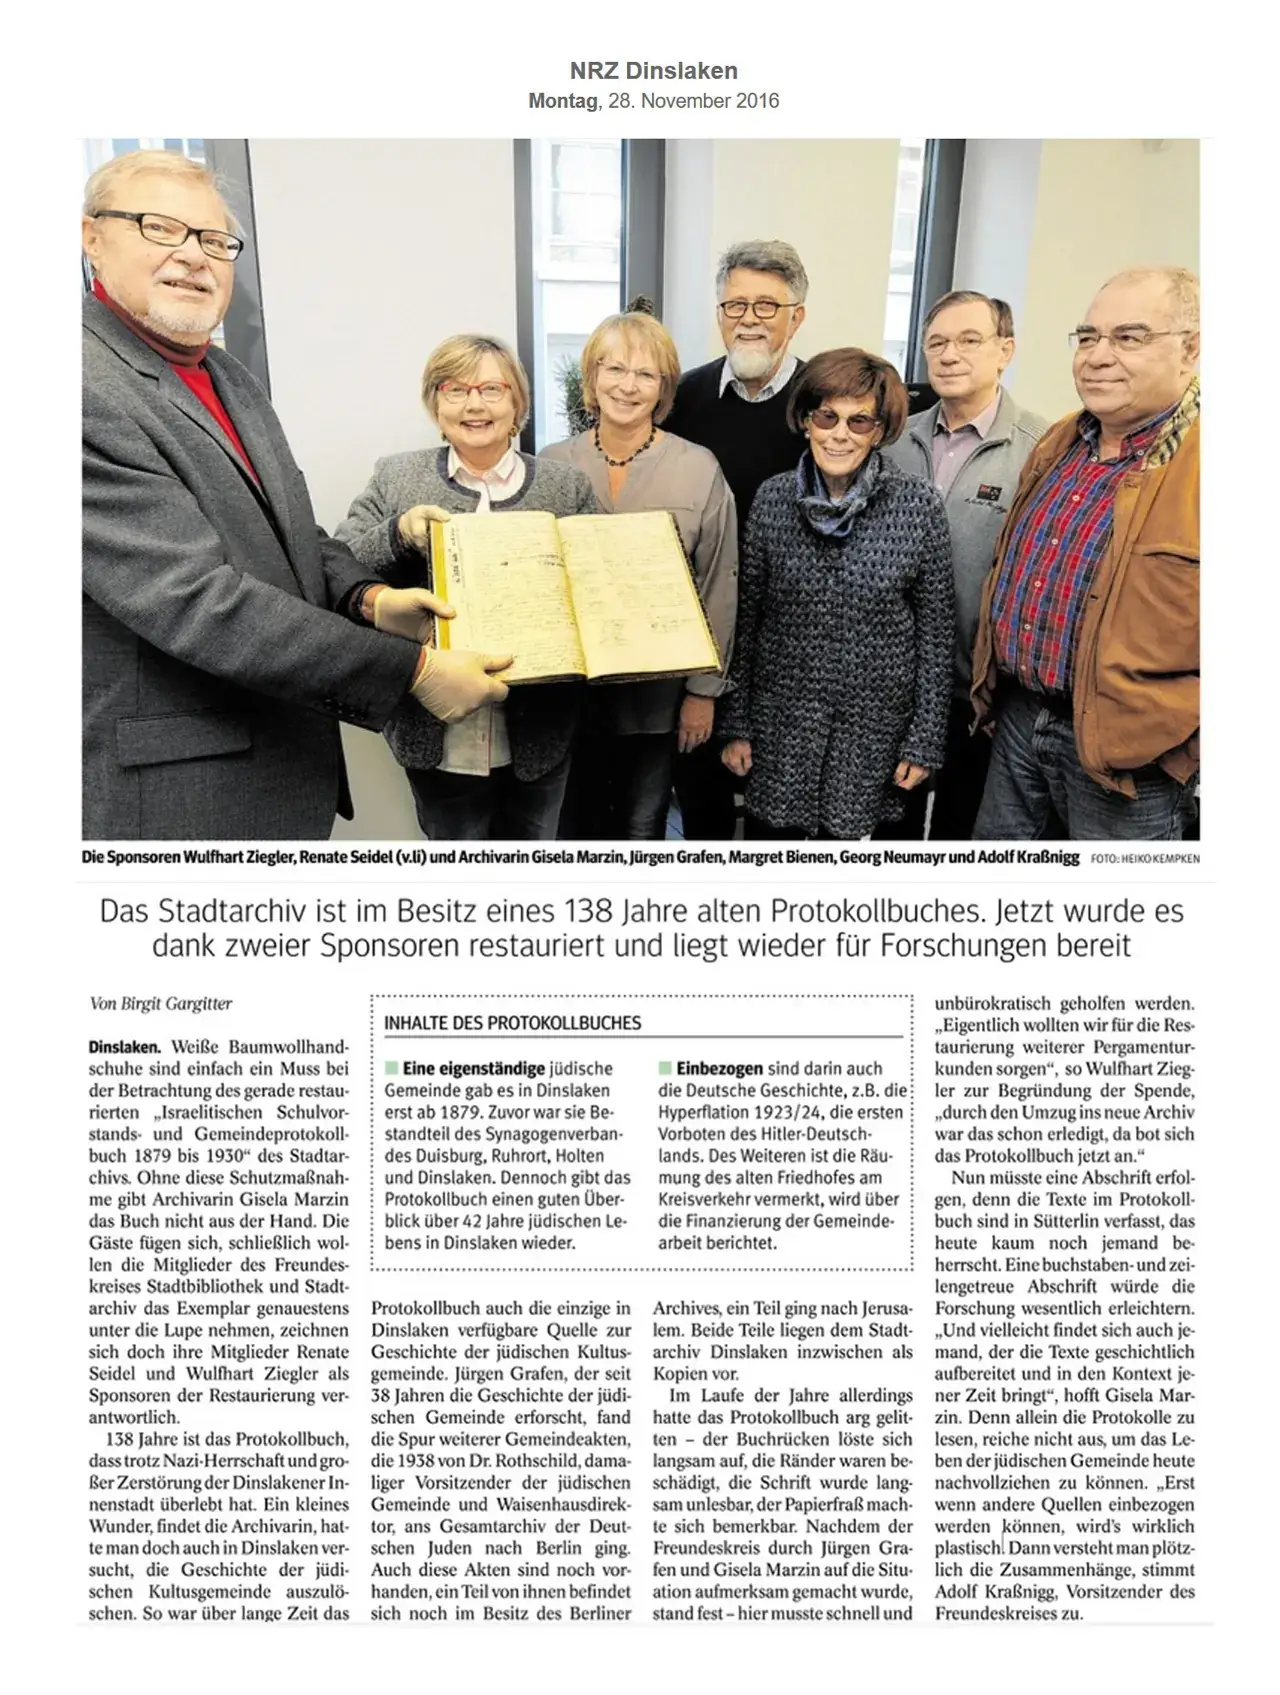 Presseartikel - Übergabe des restaurierten 138 Jahre alten Protokollbuches an die Stadtbibliothek - NRZ - 28 November 2016